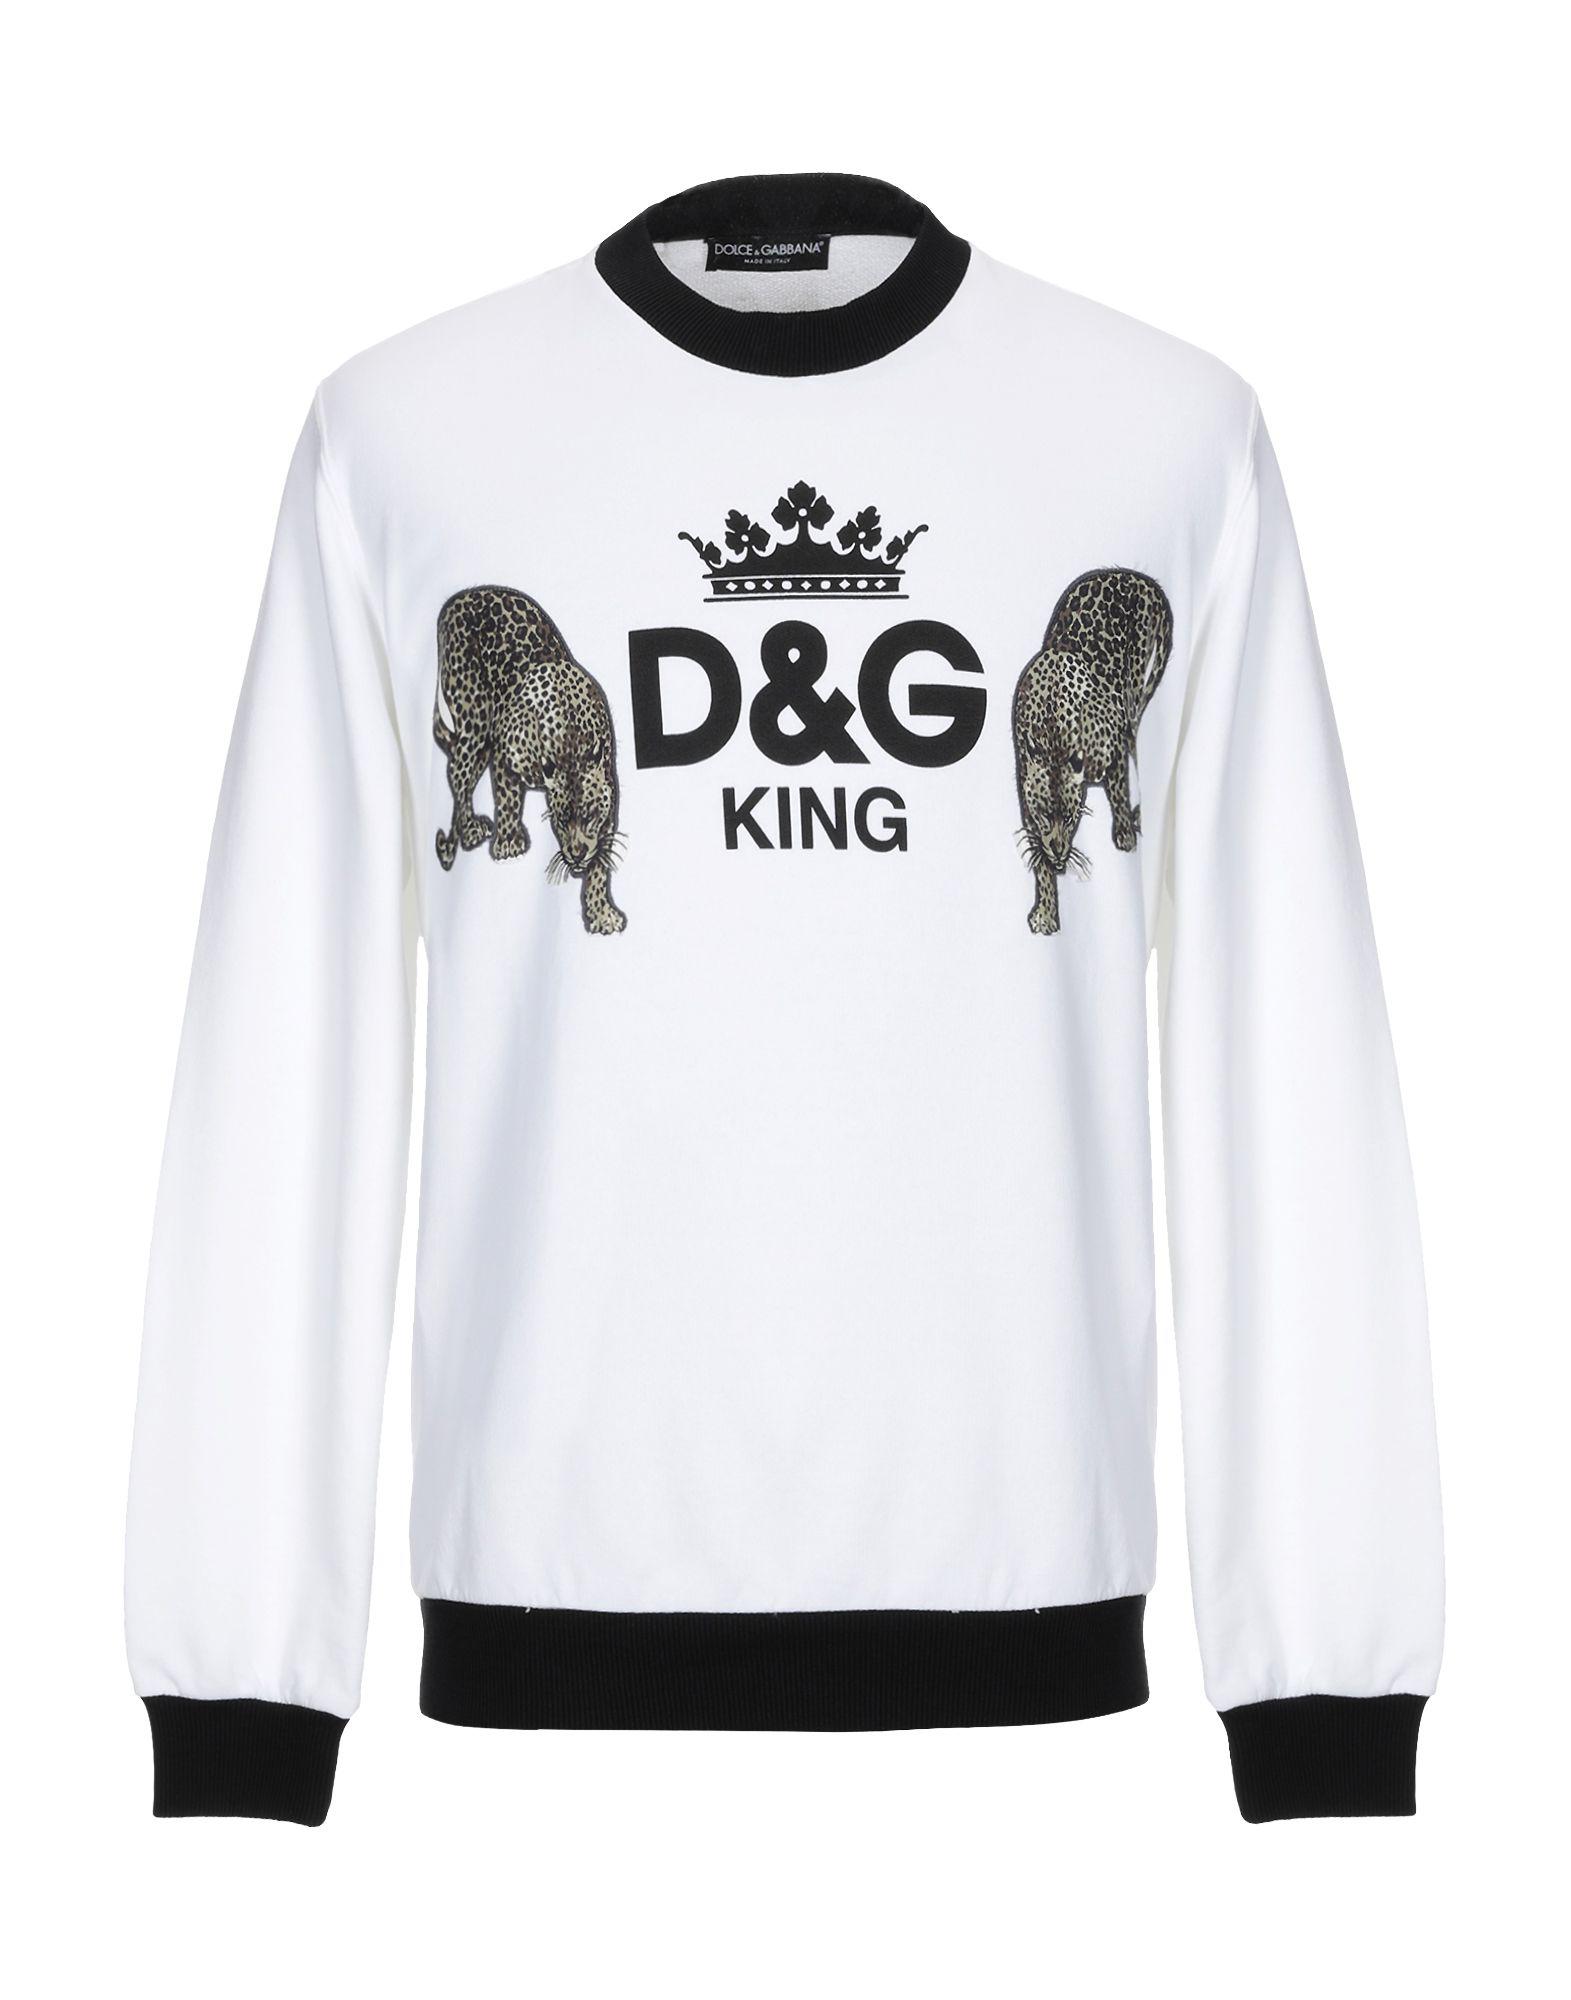 Dolce & Gabbana Cotton Sweatshirt in White for Men - Lyst